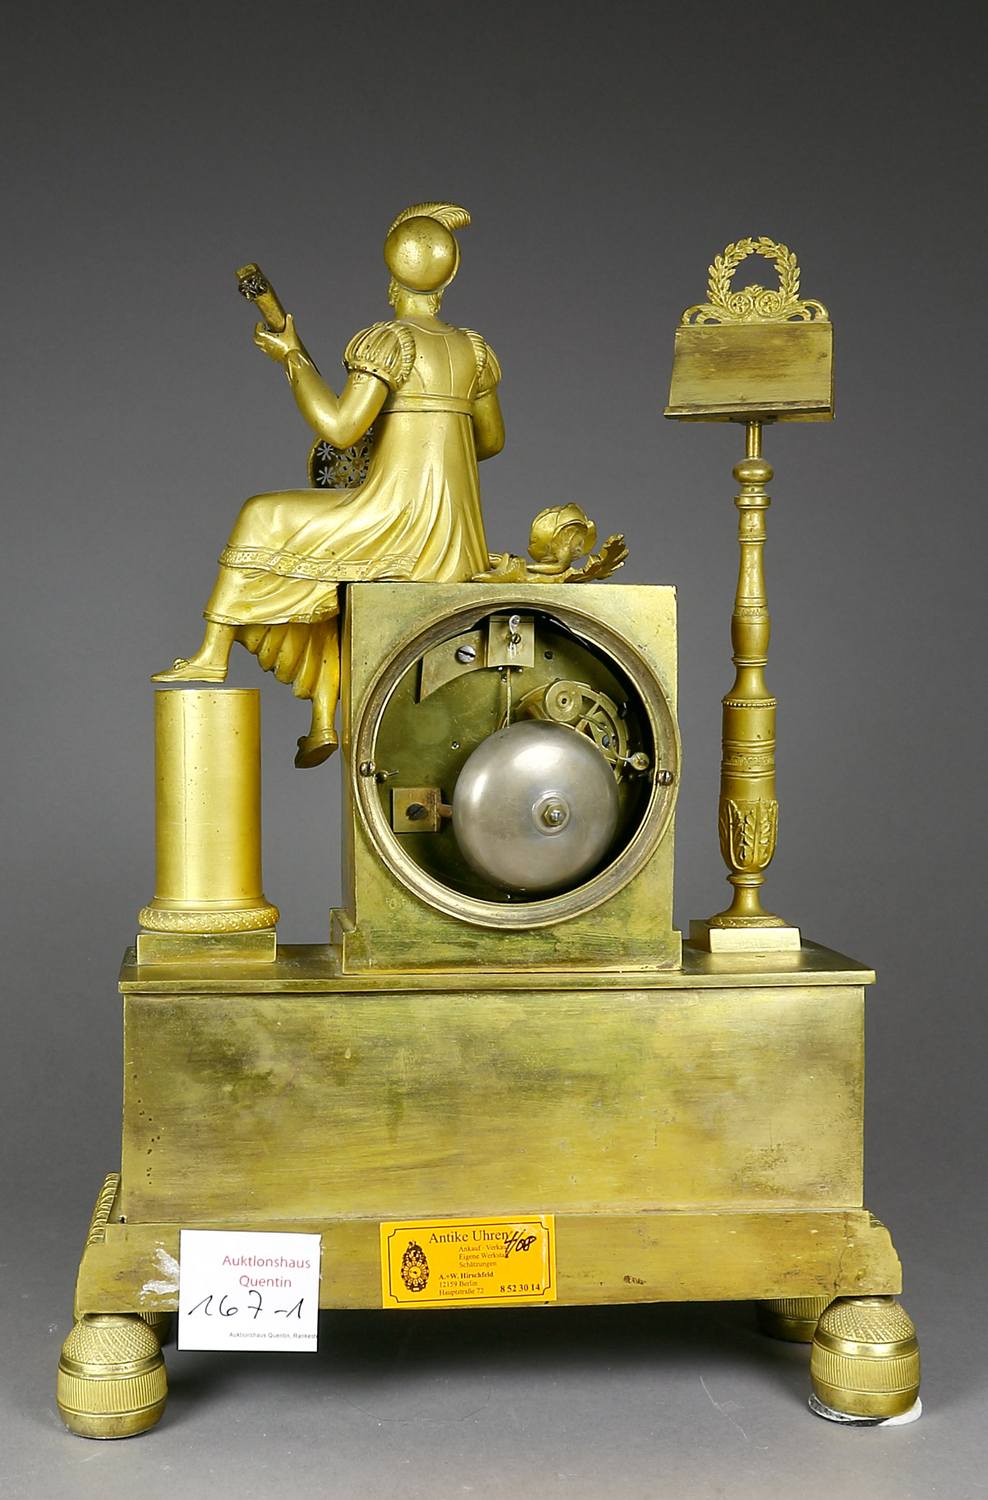 Auktionshaus Quentin Berlin  Möbel / Einrichtungsgegenstände Uhr  Kaminuhr  Empire  Frankreich  um 1820